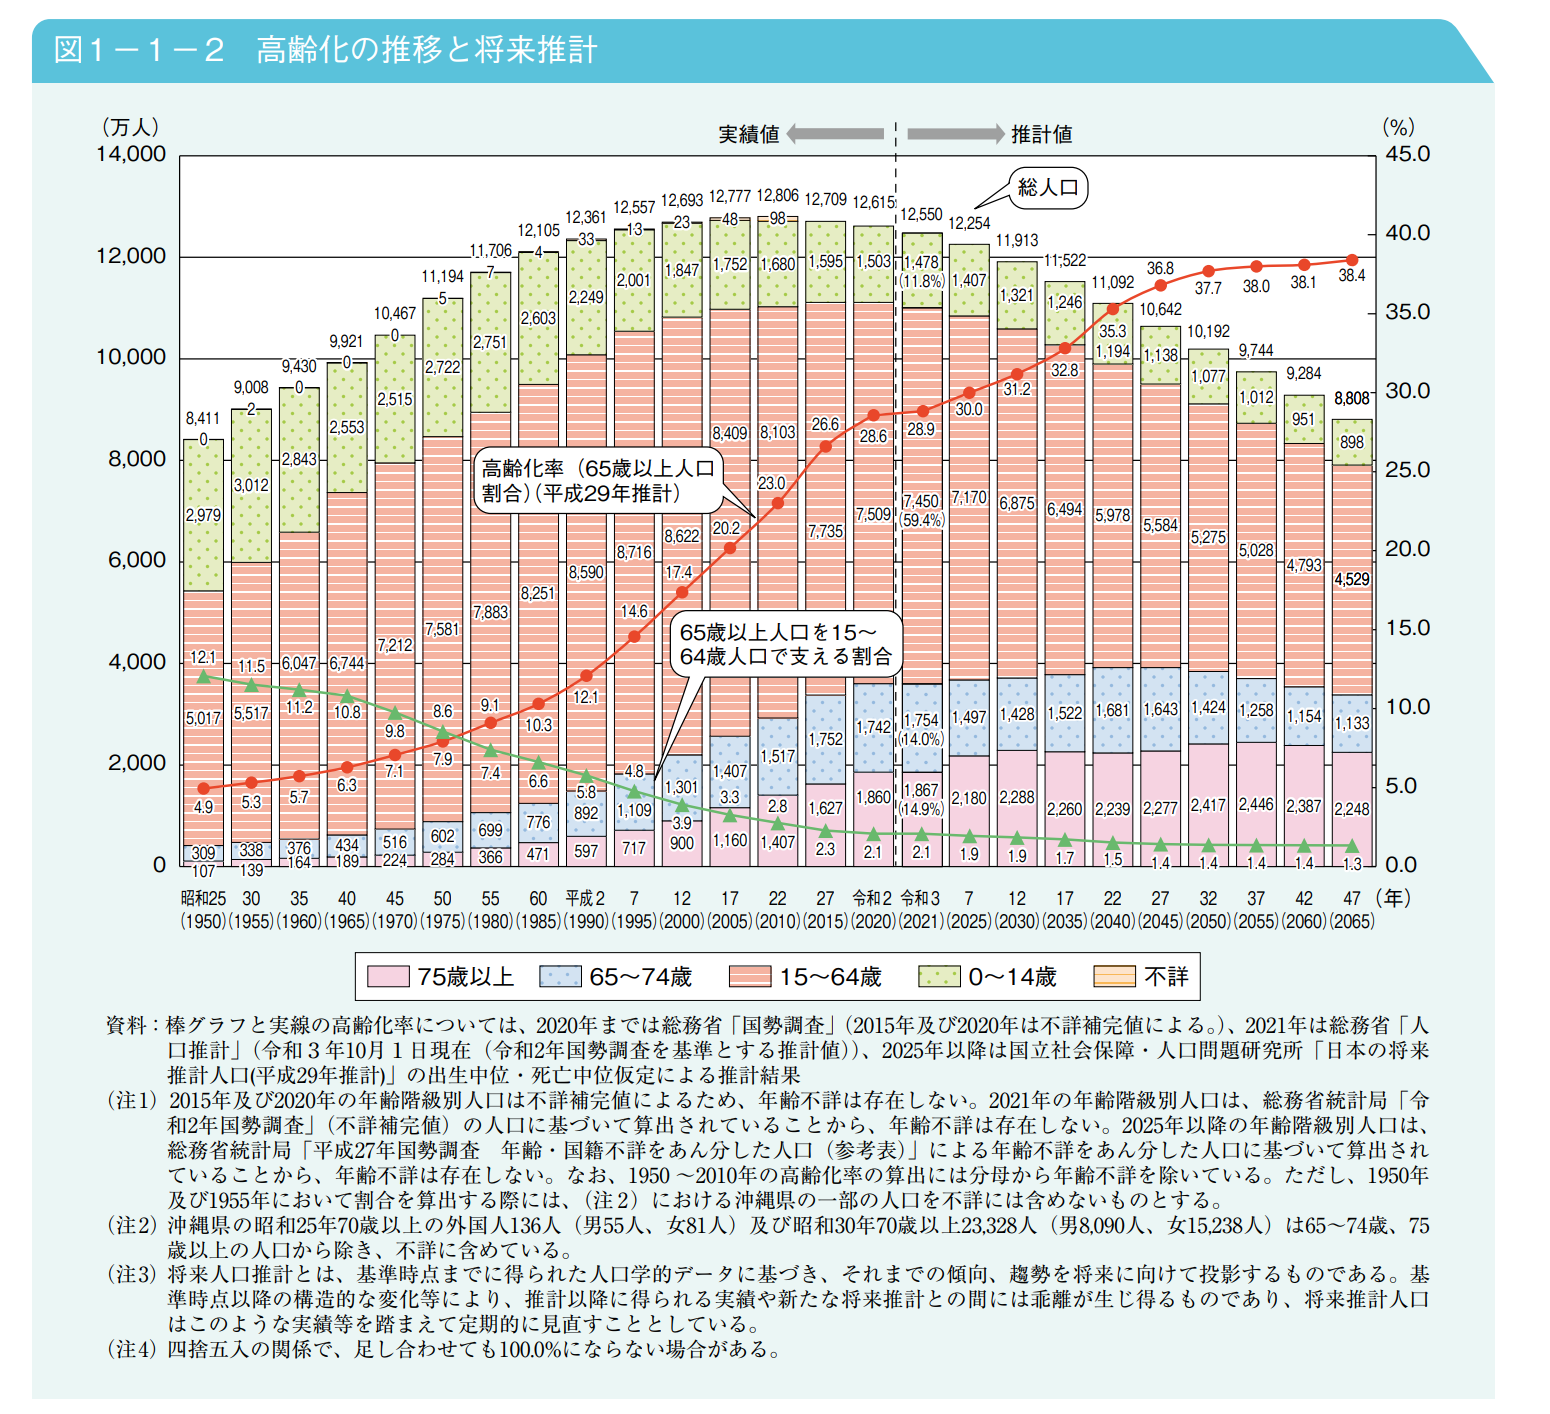 日本の高齢化の推移と予測